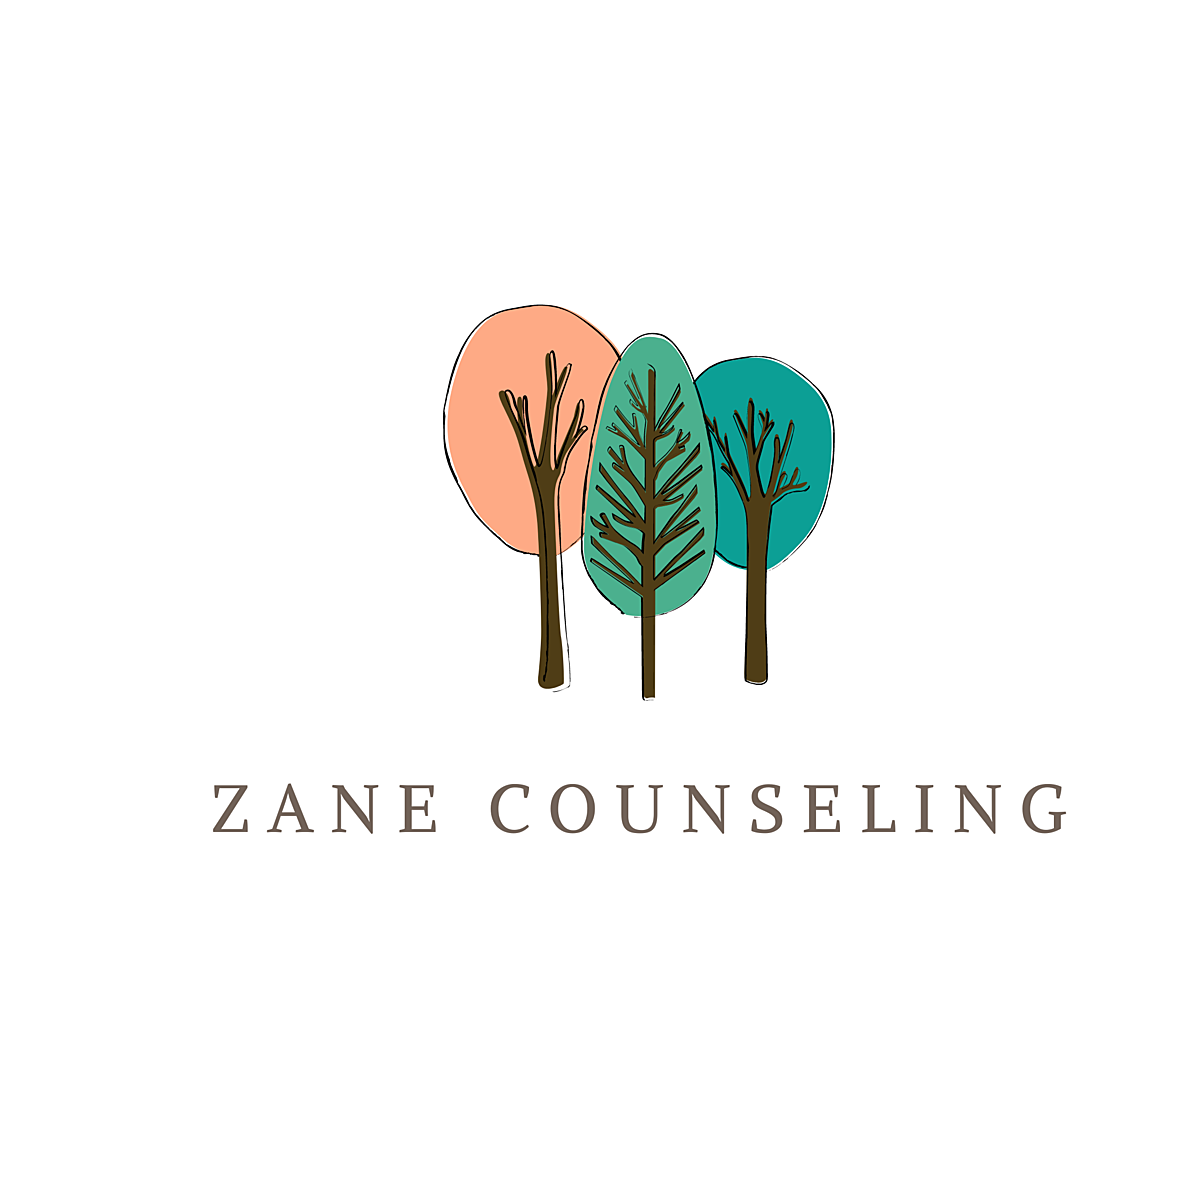 Zane Counseling